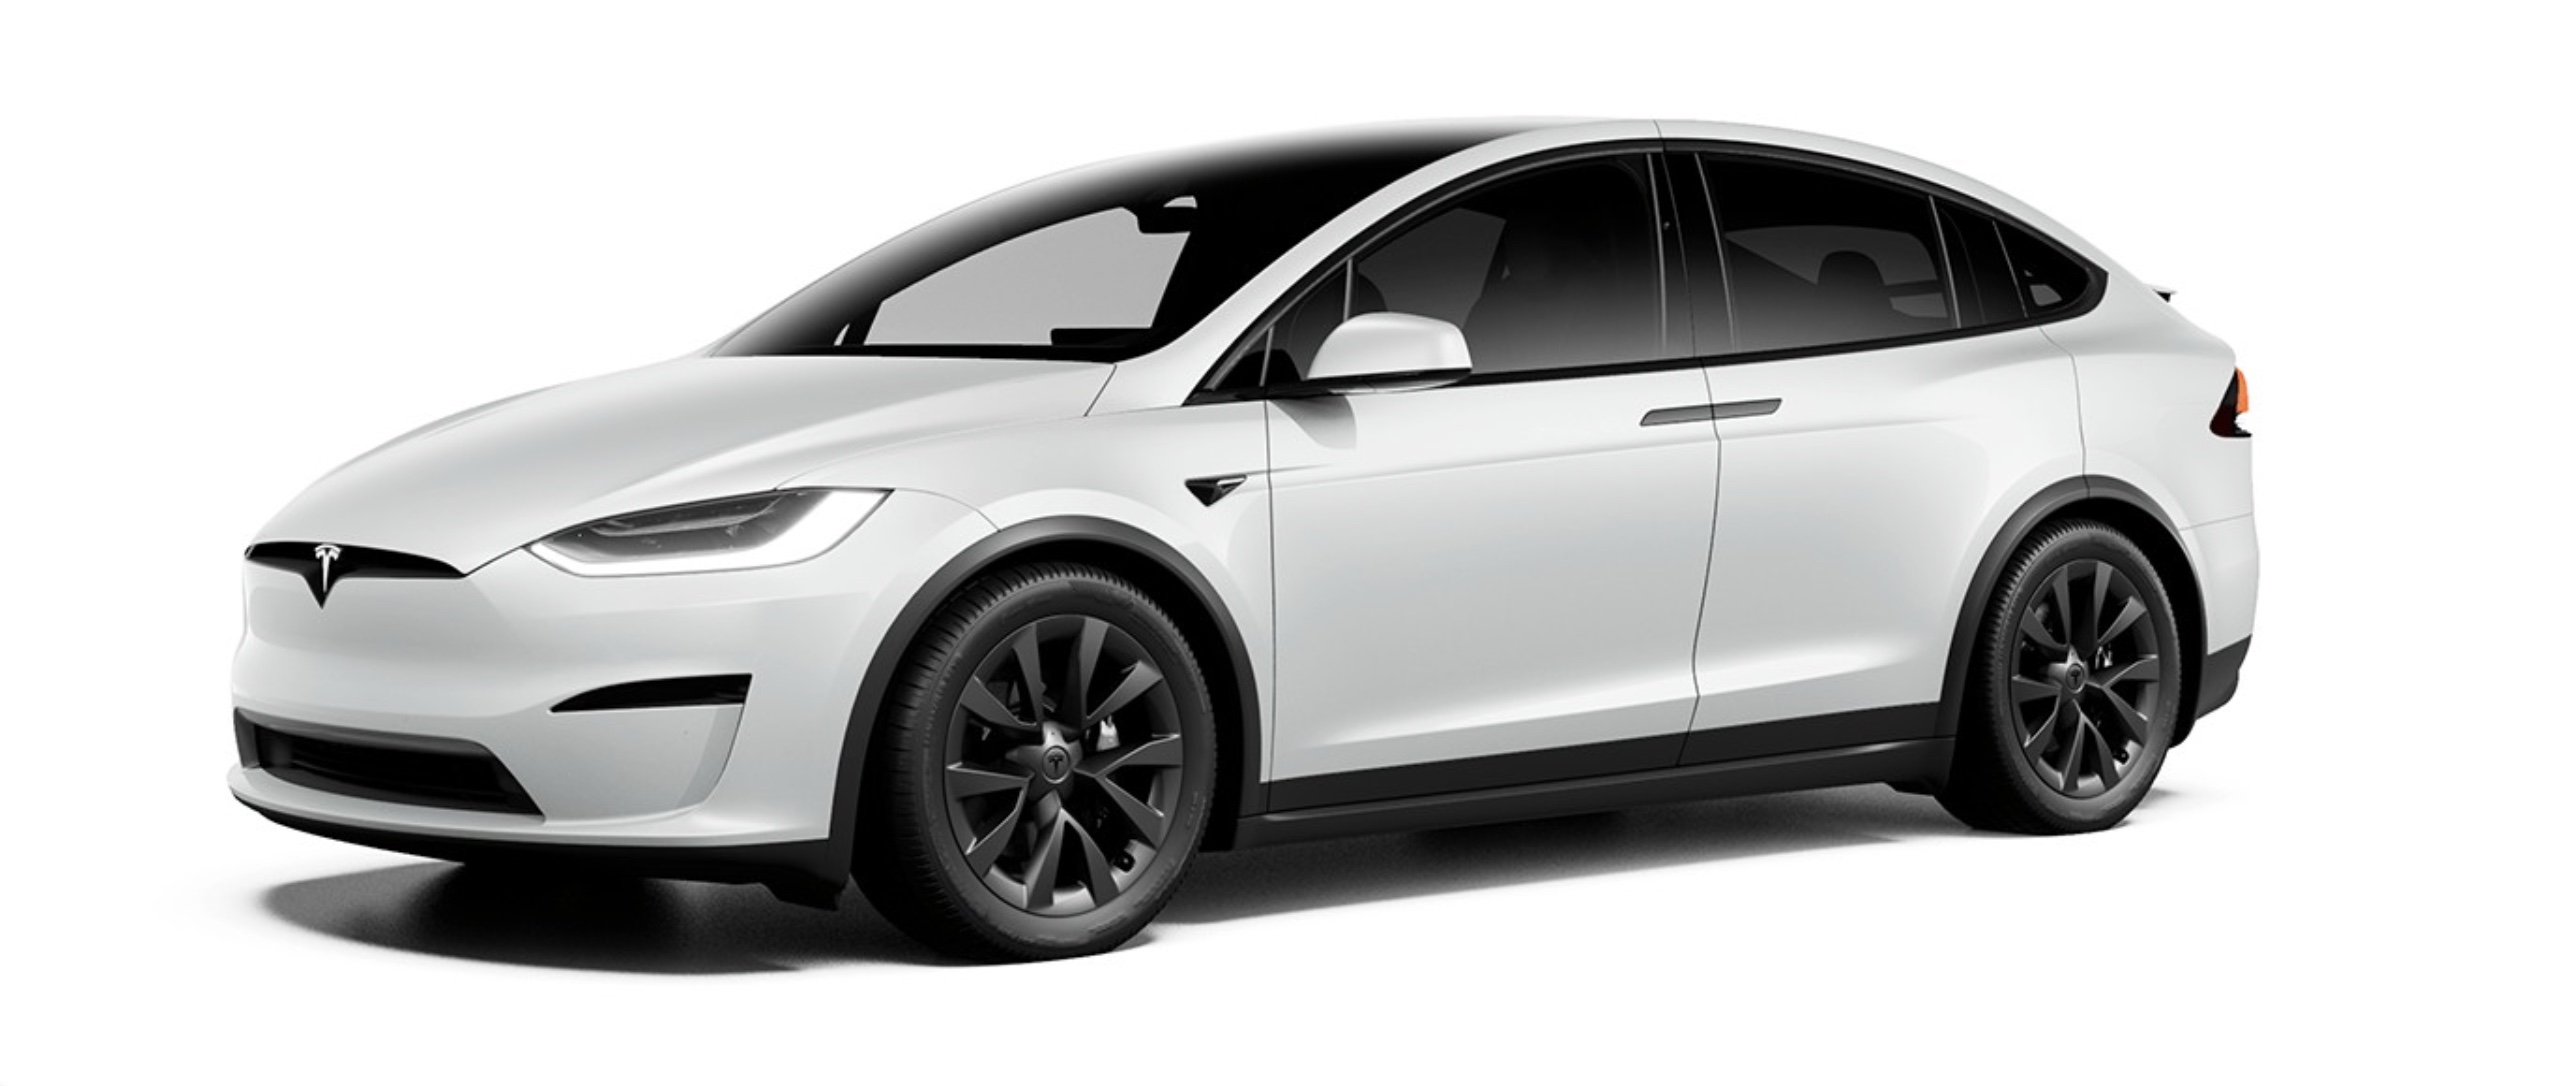 Tesla Updates Model X With New Darker Wheels Electrek